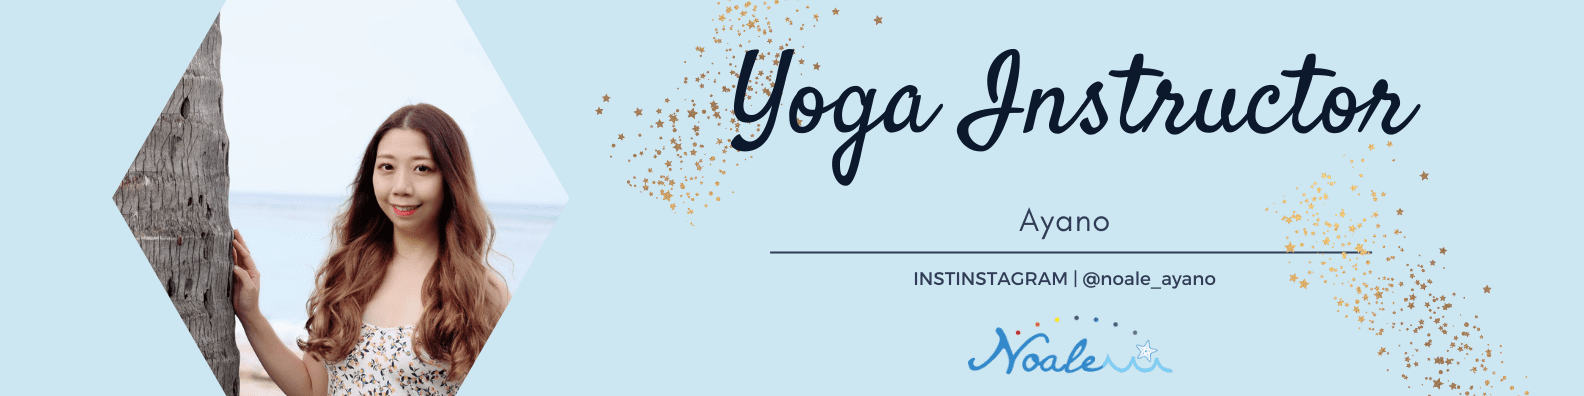 insta-yoga